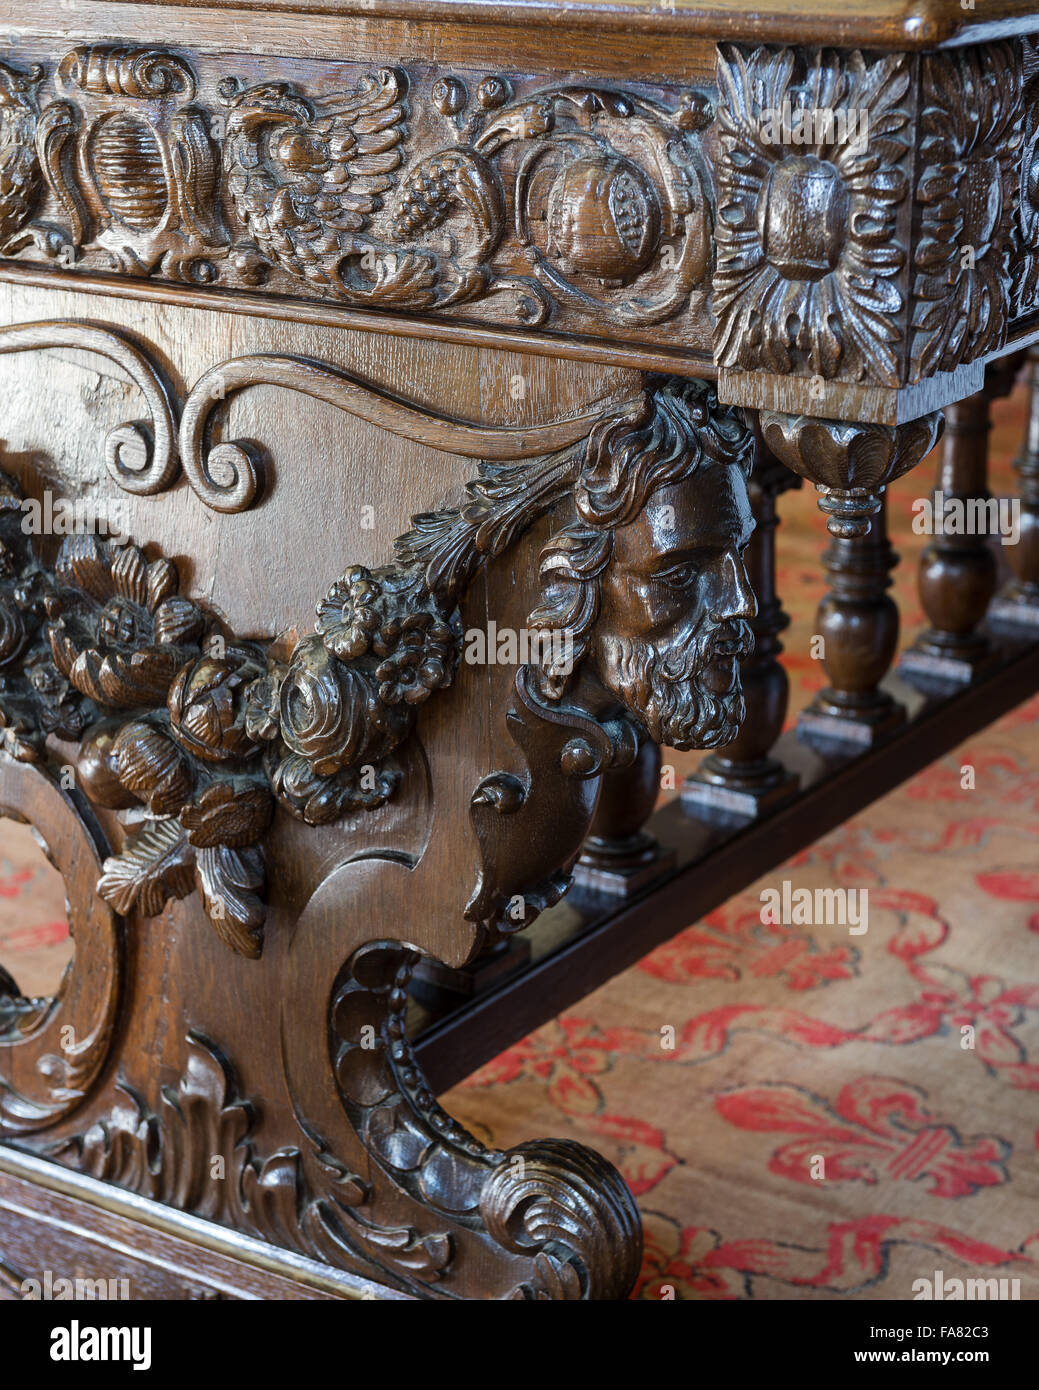 Detalle de una de las mesas ricamente tallada en la biblioteca, Oxburgh Hall, en Norfolk. Este 19th-century tabla (uno de los dos en la habitación), pueden ser el resultado del trabajo de ebanista Malfait belga. Foto de stock